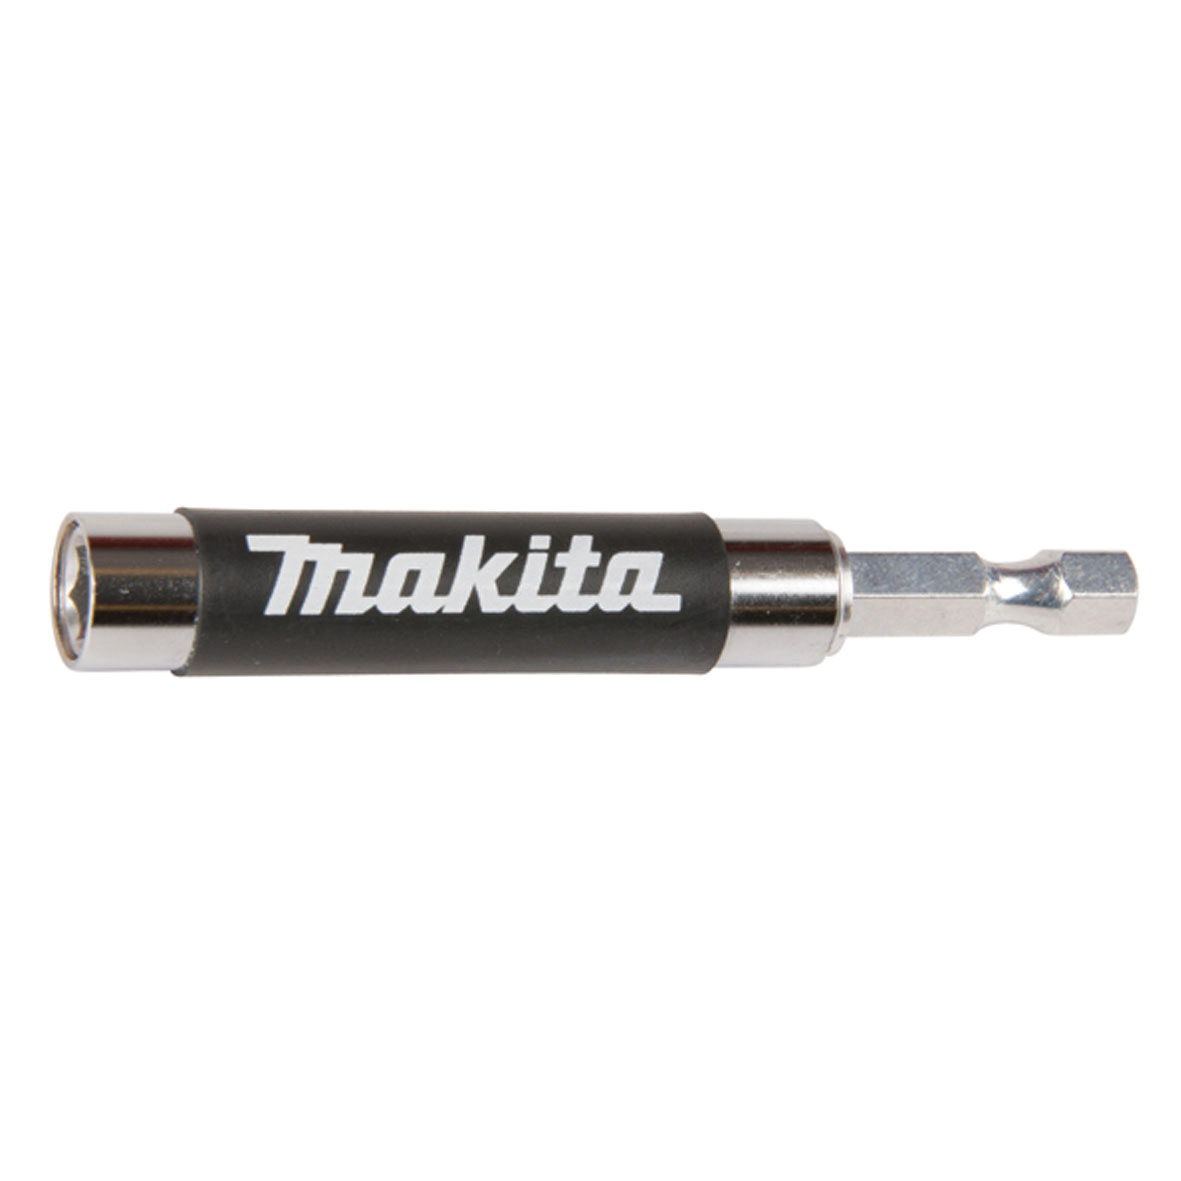 Makita B-48751 Guia de atornillado 80 mm MAK-B-48751 | ACCESORIOS ATORNILLADORES